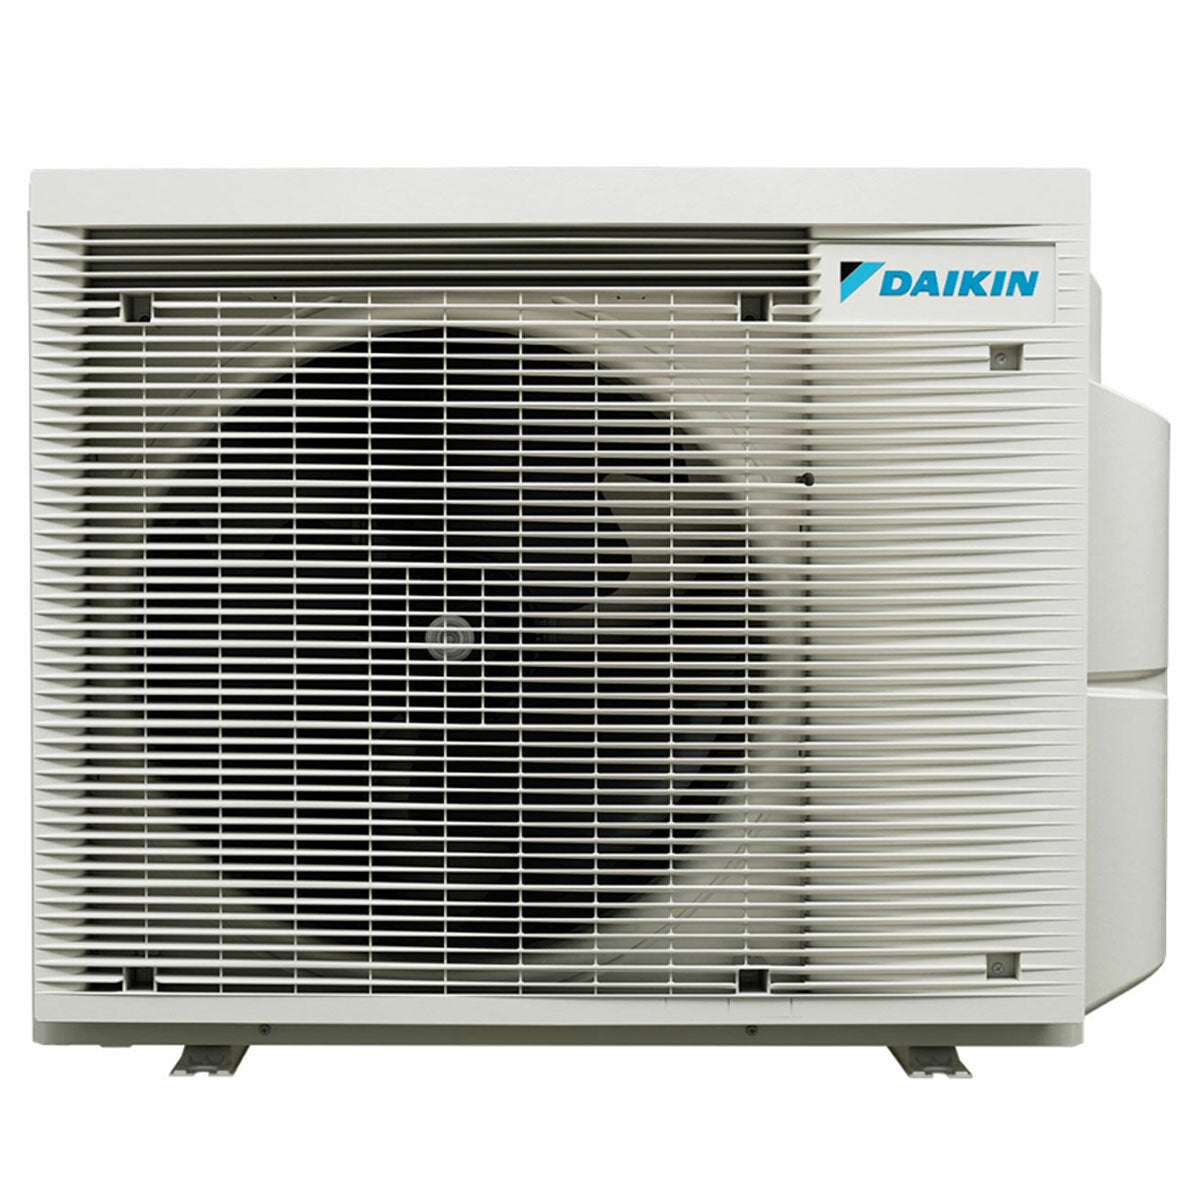 Daikin Emura 3 trial split air conditioner 7000+9000+15000 BTU inverter A++ wifi outdoor unit 5 kW Silver